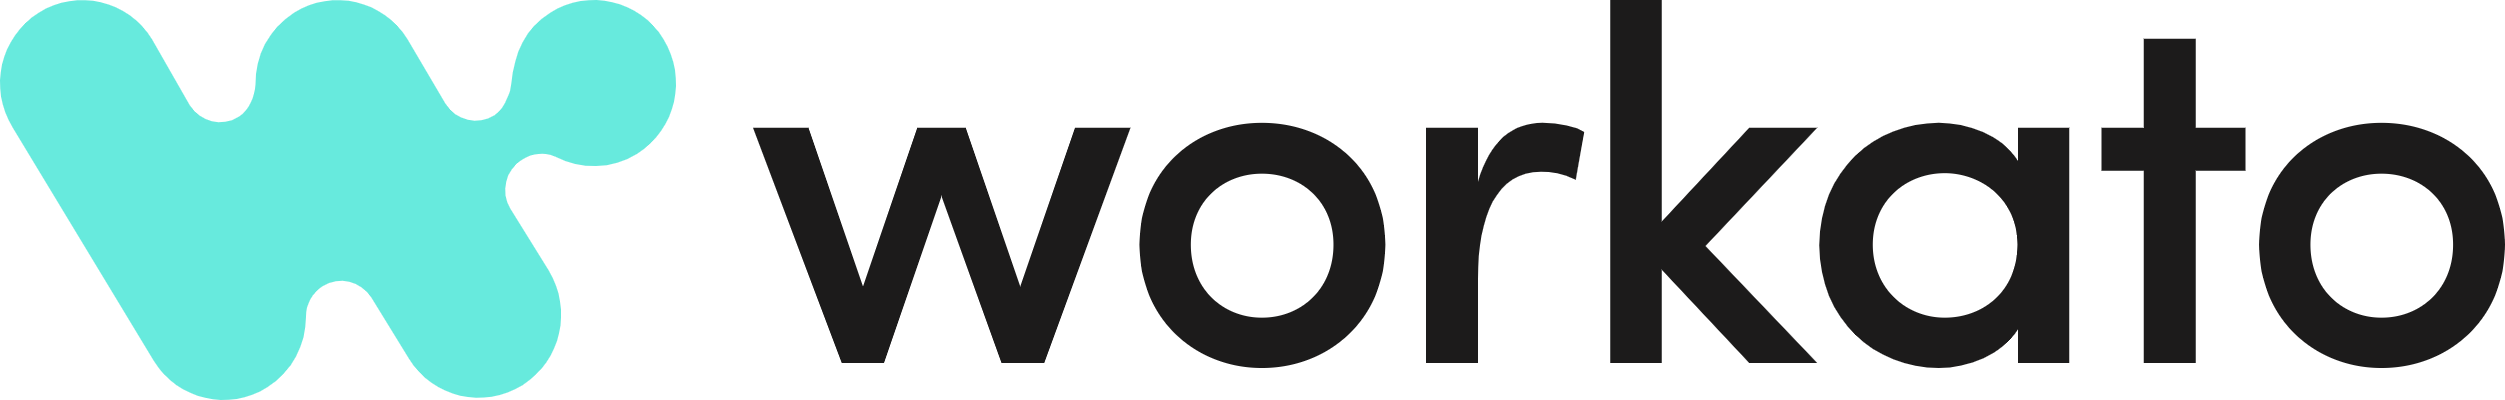 workato - logo - black